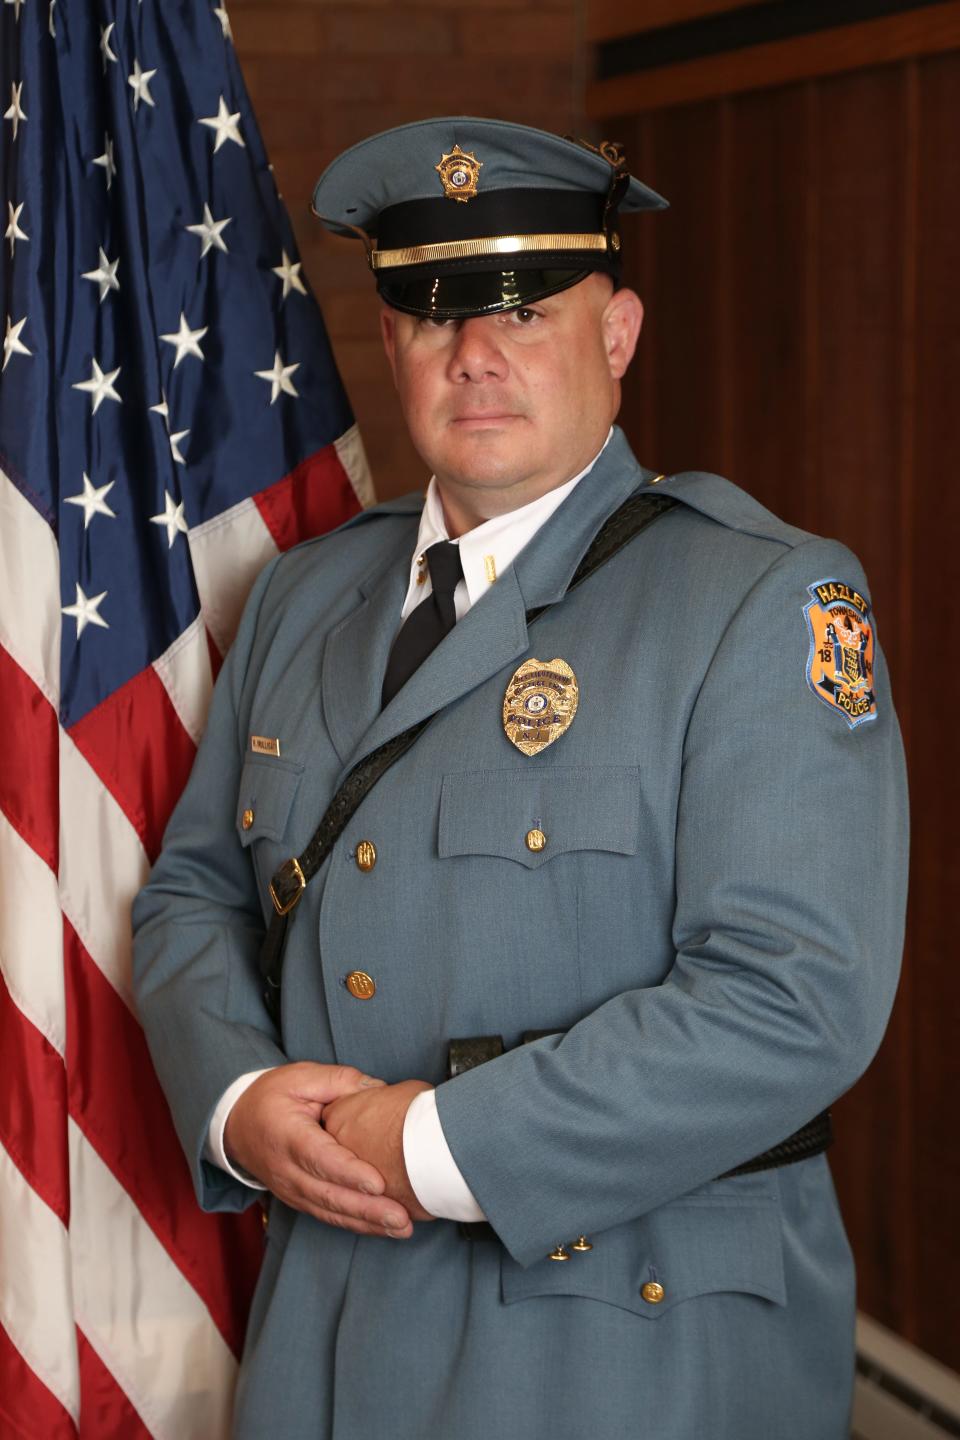 Bob Mulligan, Hazlet's chief of police.